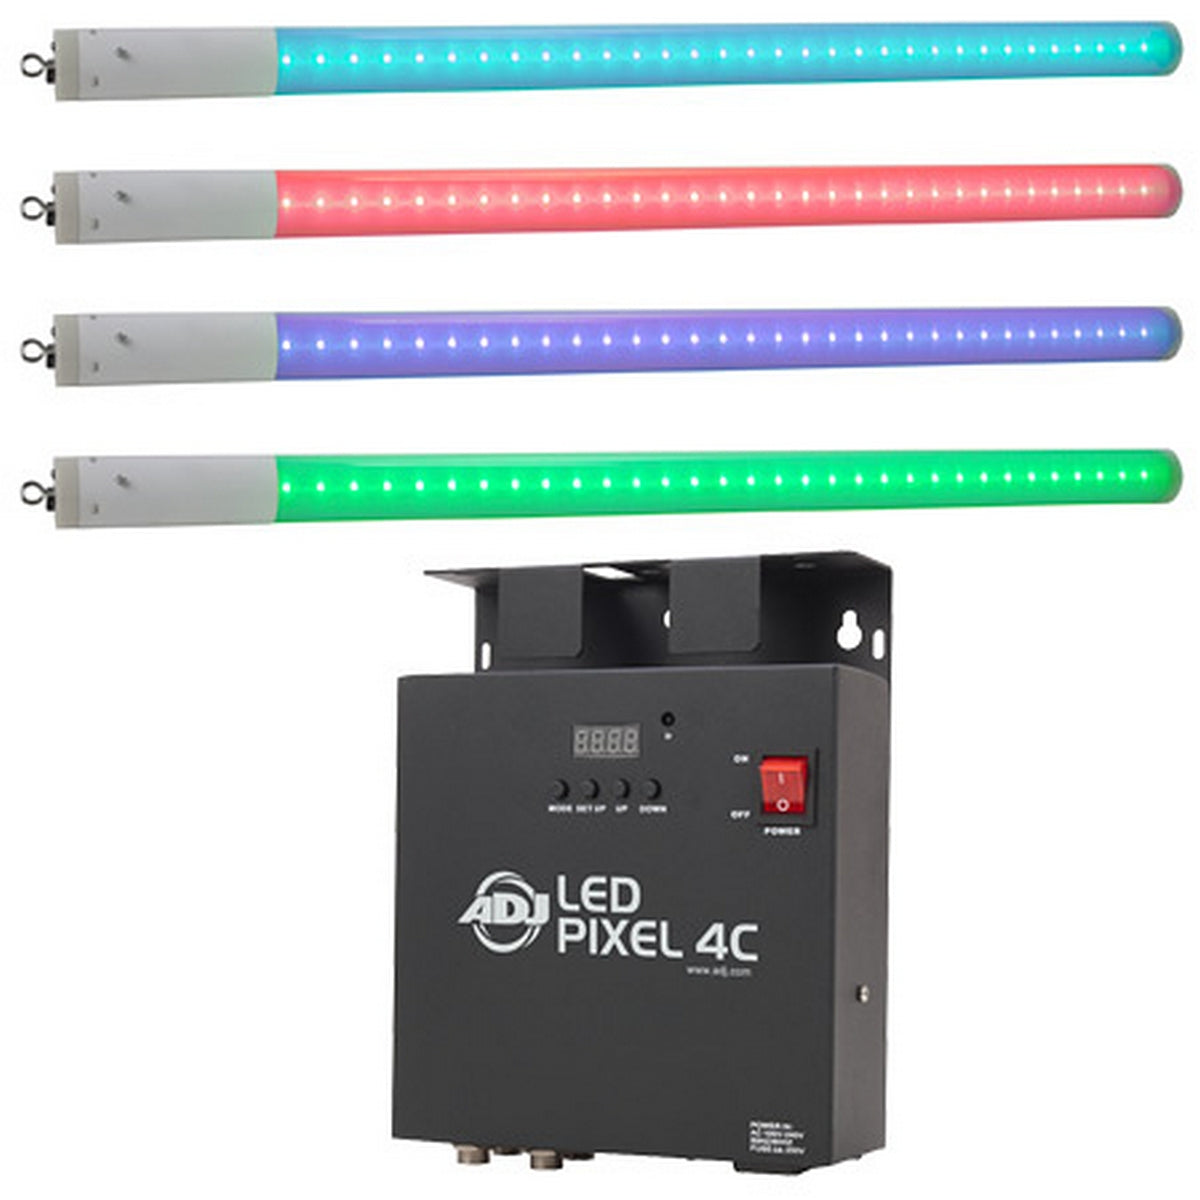 ADJ LED Pixel Tube Sys | 4 x LED Pixel Tube 360 and 1 LED Pixel 4C